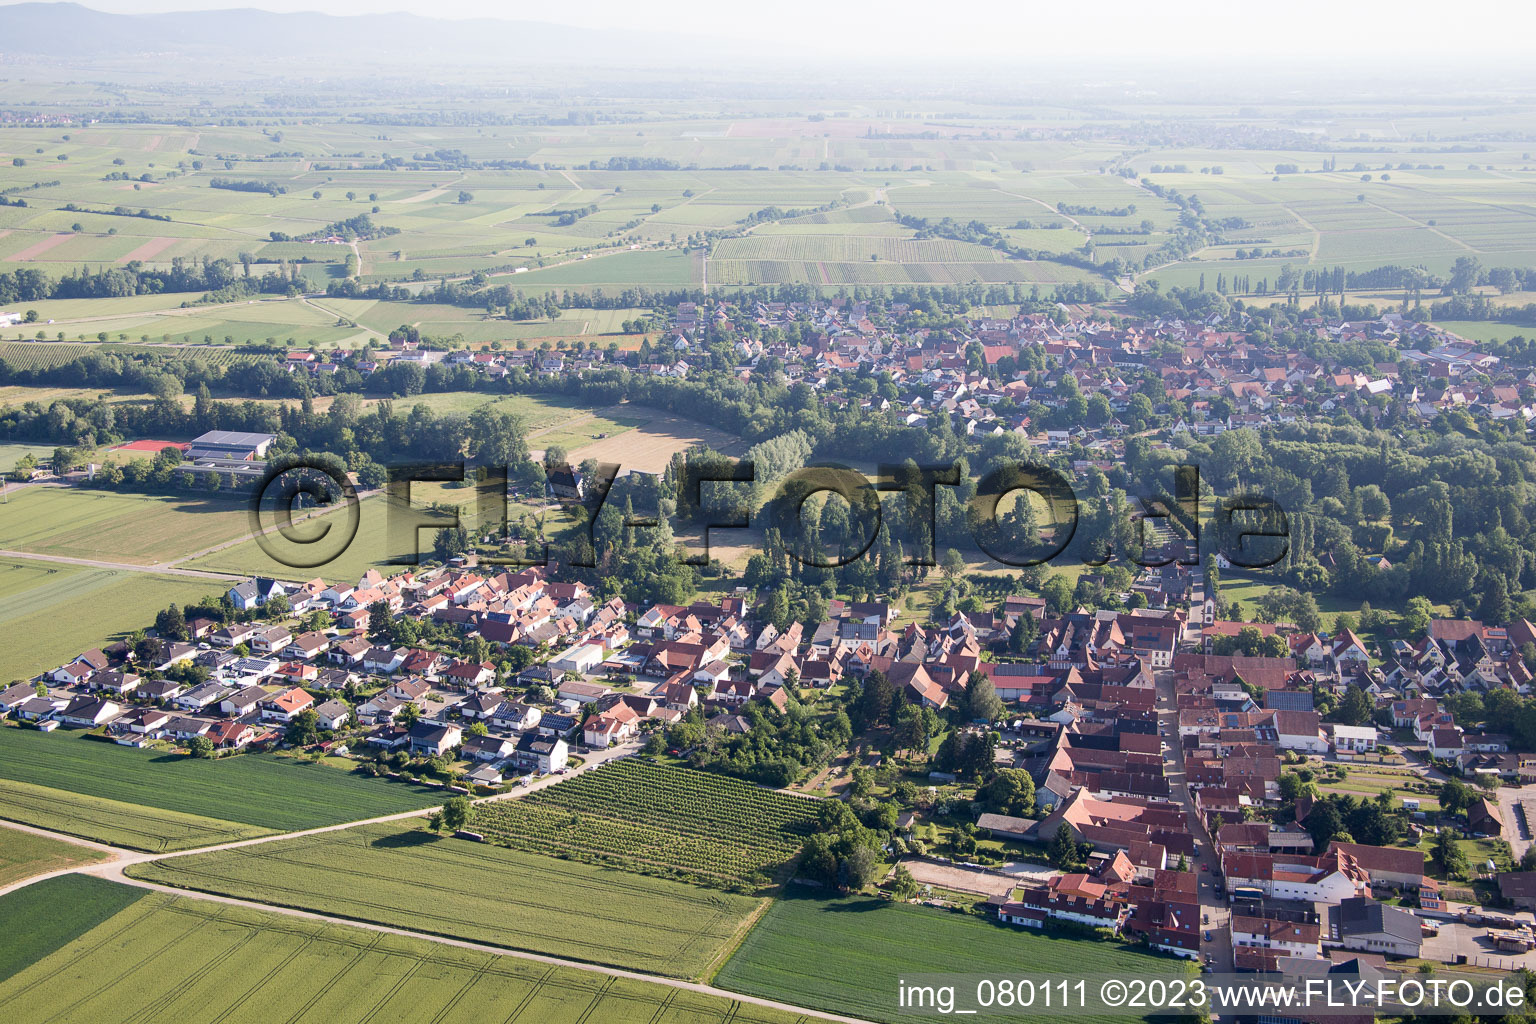 Oblique view of District Billigheim in Billigheim-Ingenheim in the state Rhineland-Palatinate, Germany